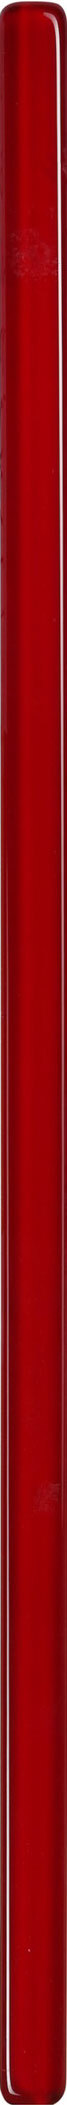 Плитка бордюр Керамин Соло 1 стеклянная красная 600x20x8,5 мм